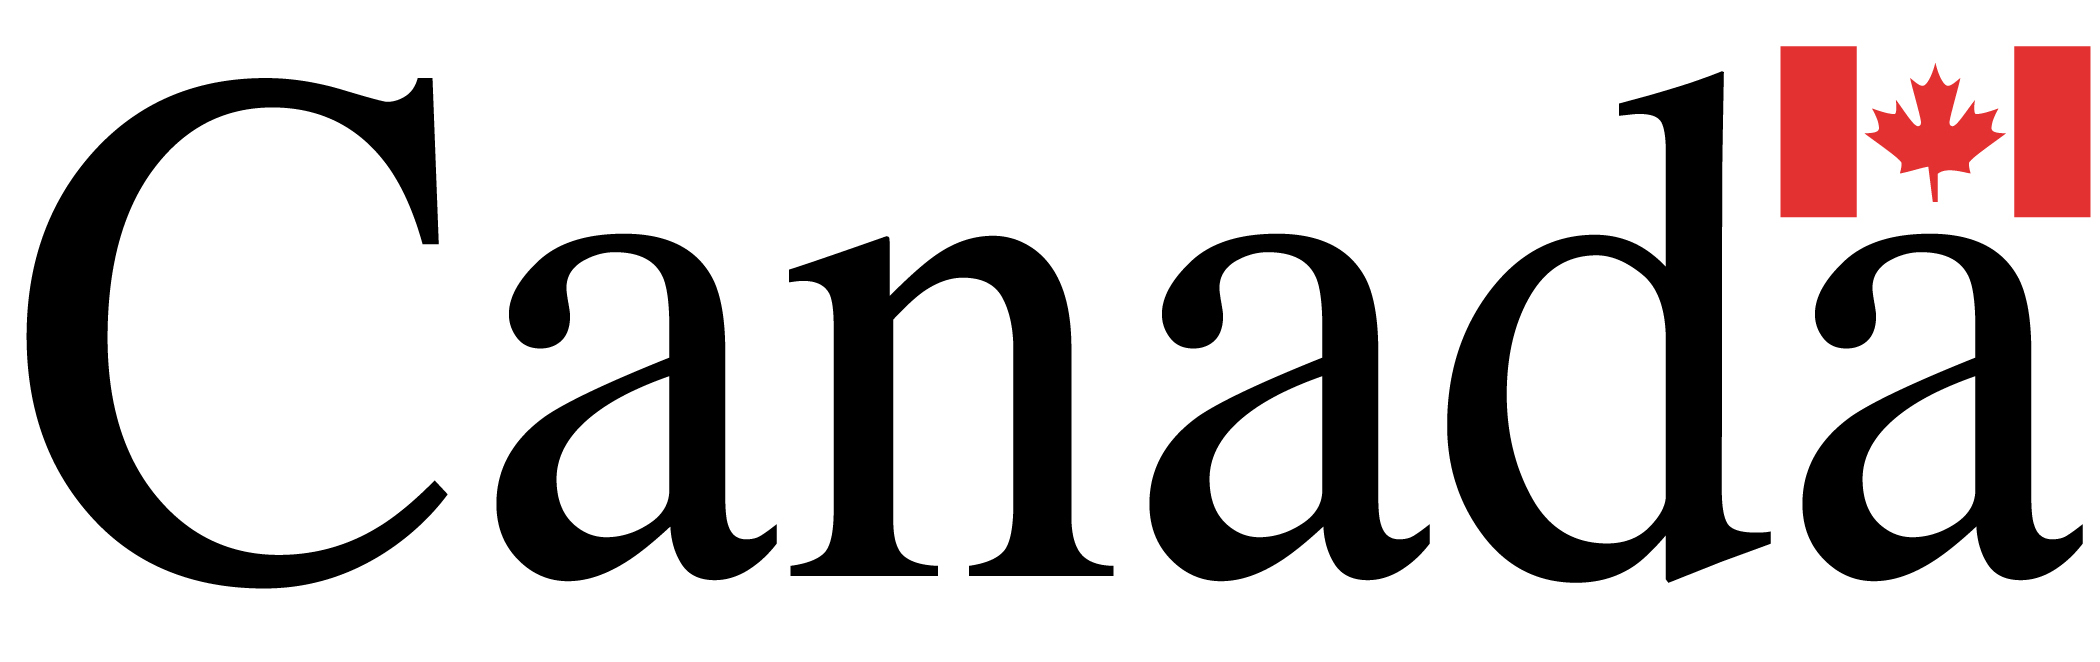 Canada govt Logo